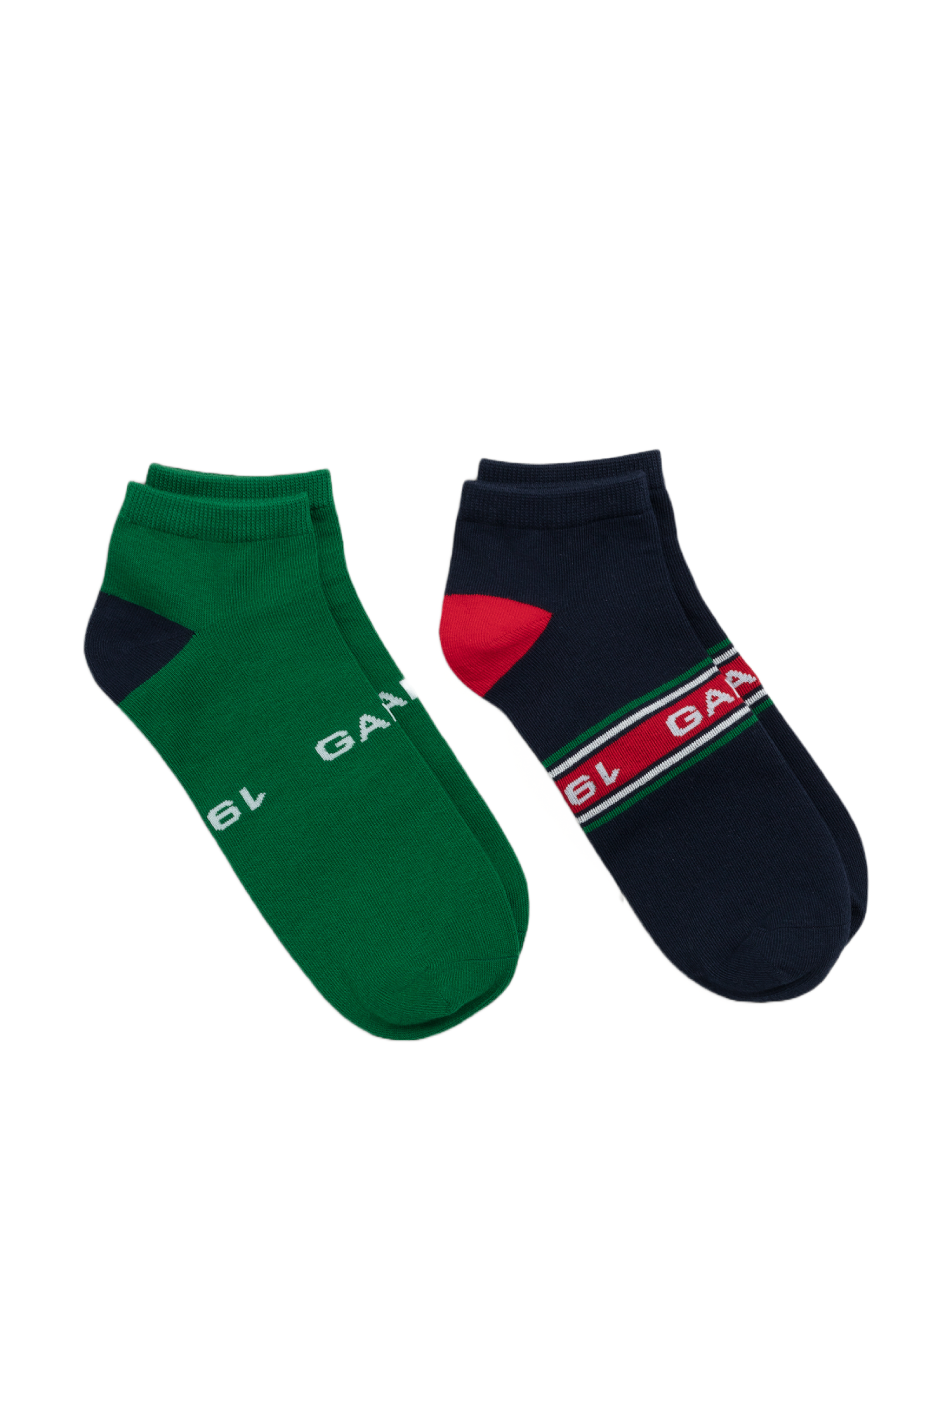 Gant Men's Ankle Sock 2 Pack